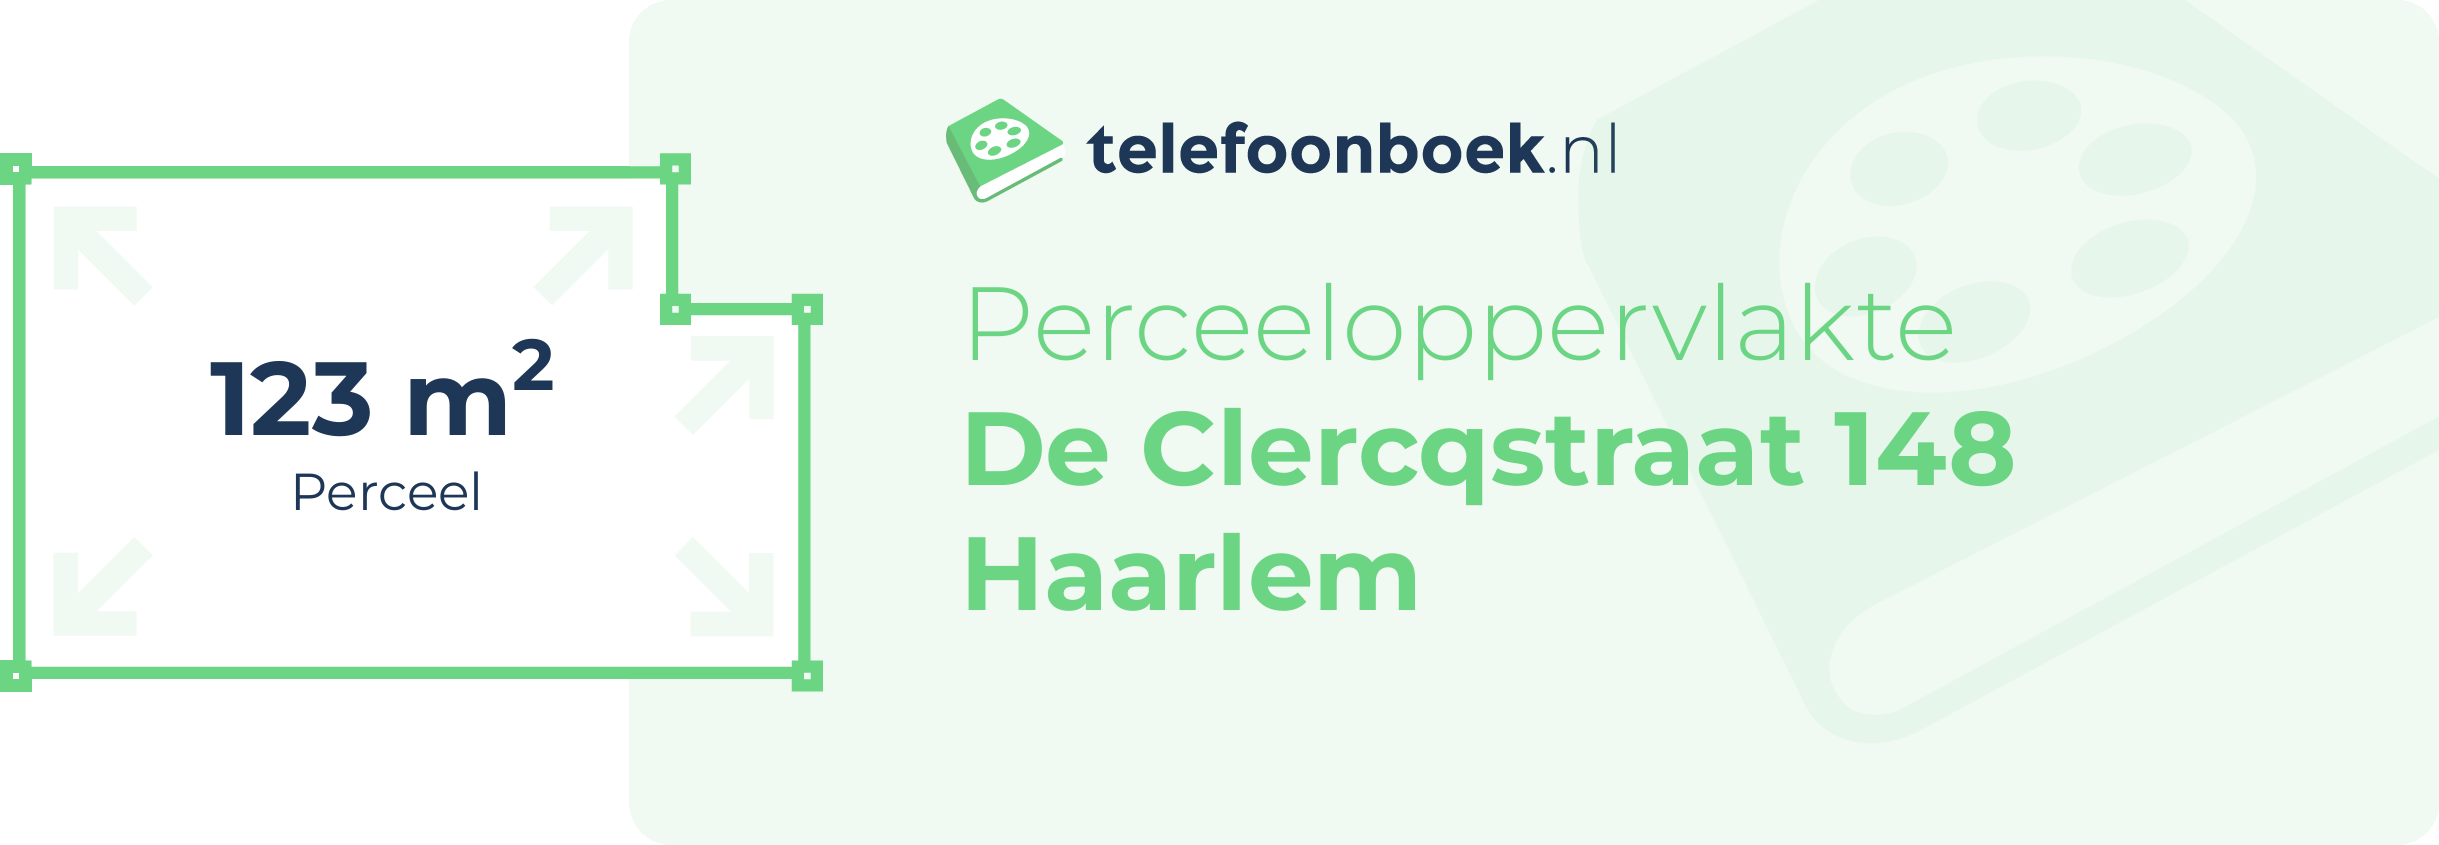 Perceeloppervlakte De Clercqstraat 148 Haarlem